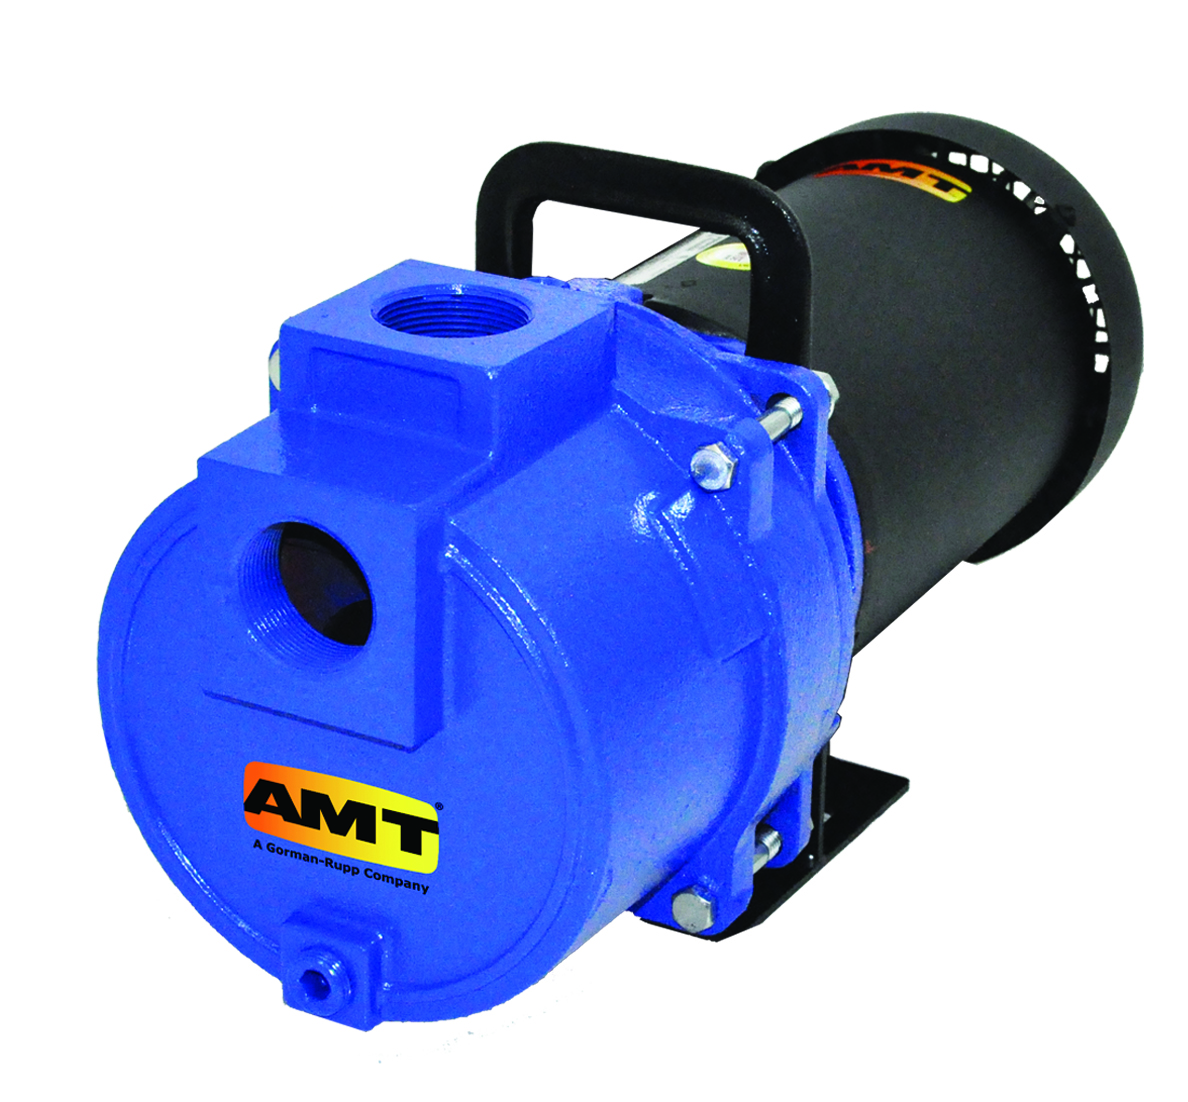 AMT Sprinkler & Booster Pumps